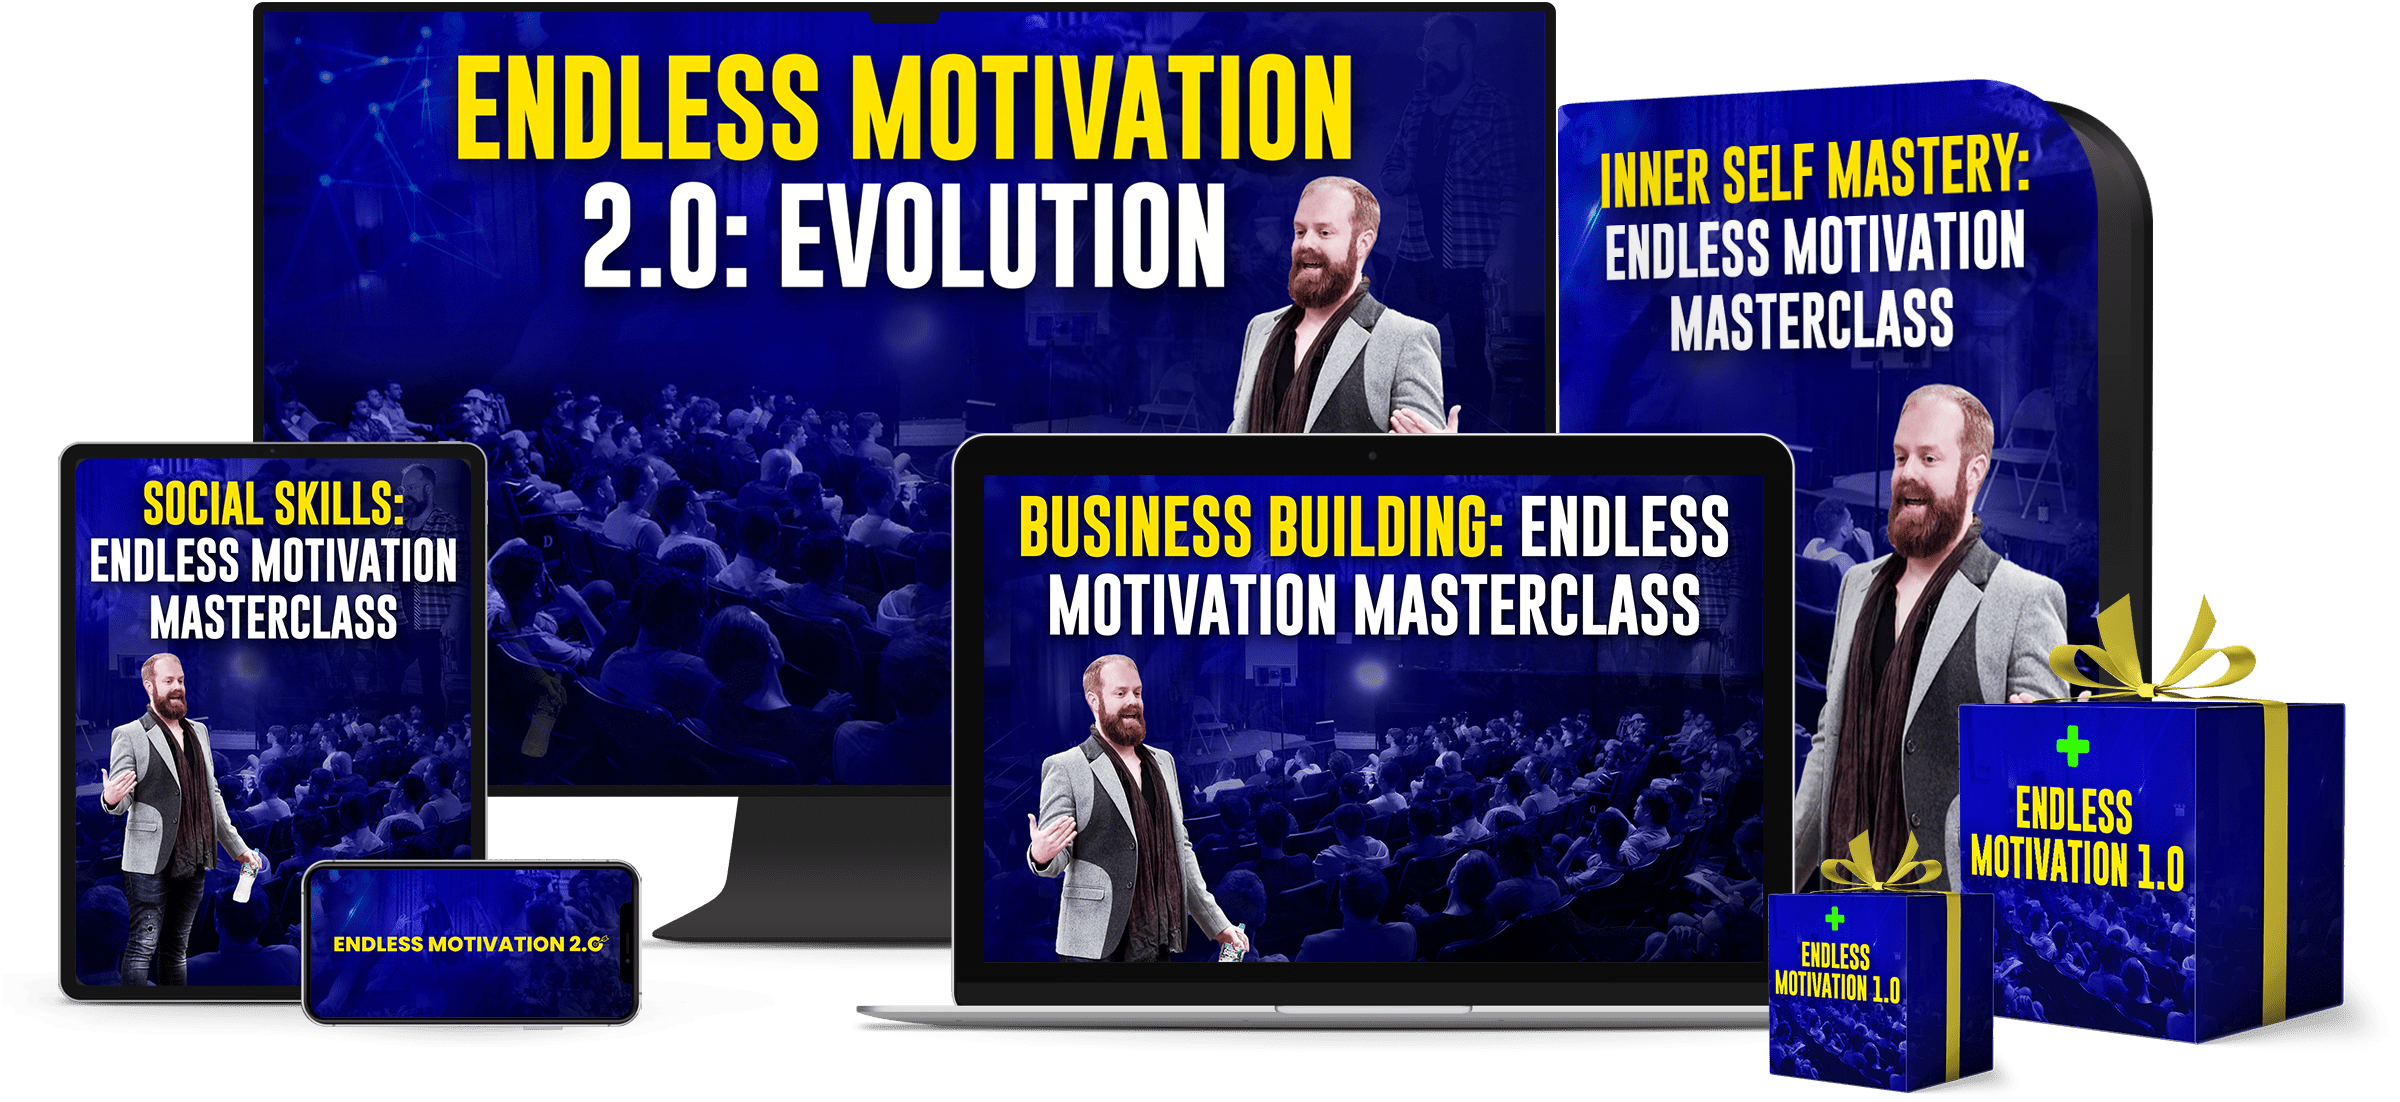 Endless Motivation 2.0: Evolution